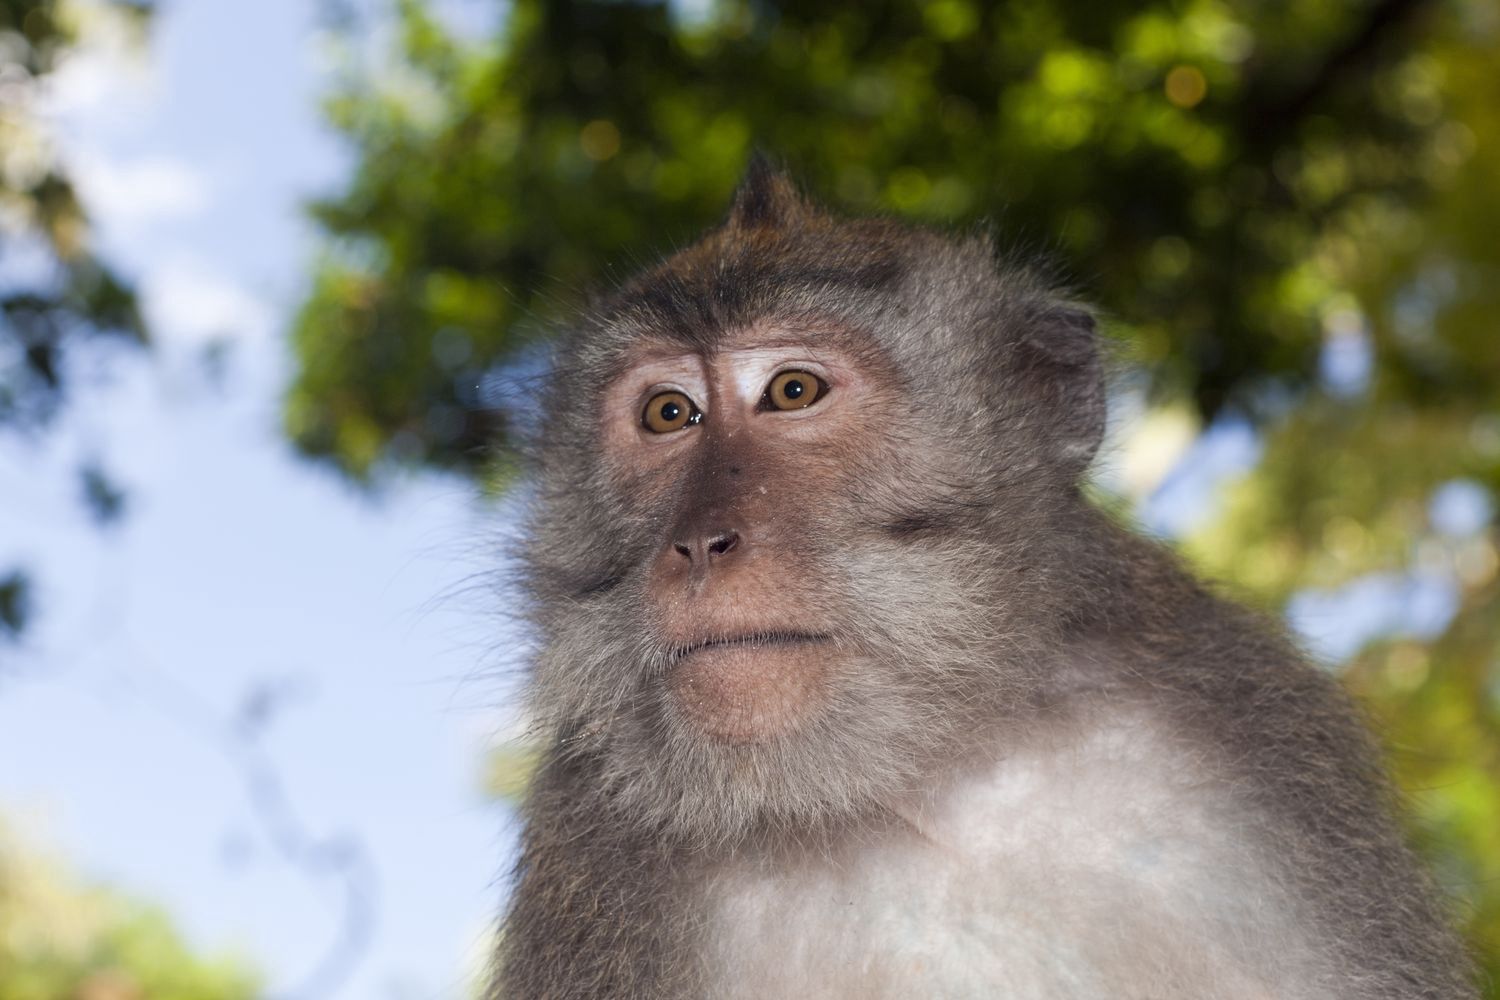 Małpa uciekła z próbkami do badań nad COVID-19. Wcześniej zaatakowała pracownika laboratorium